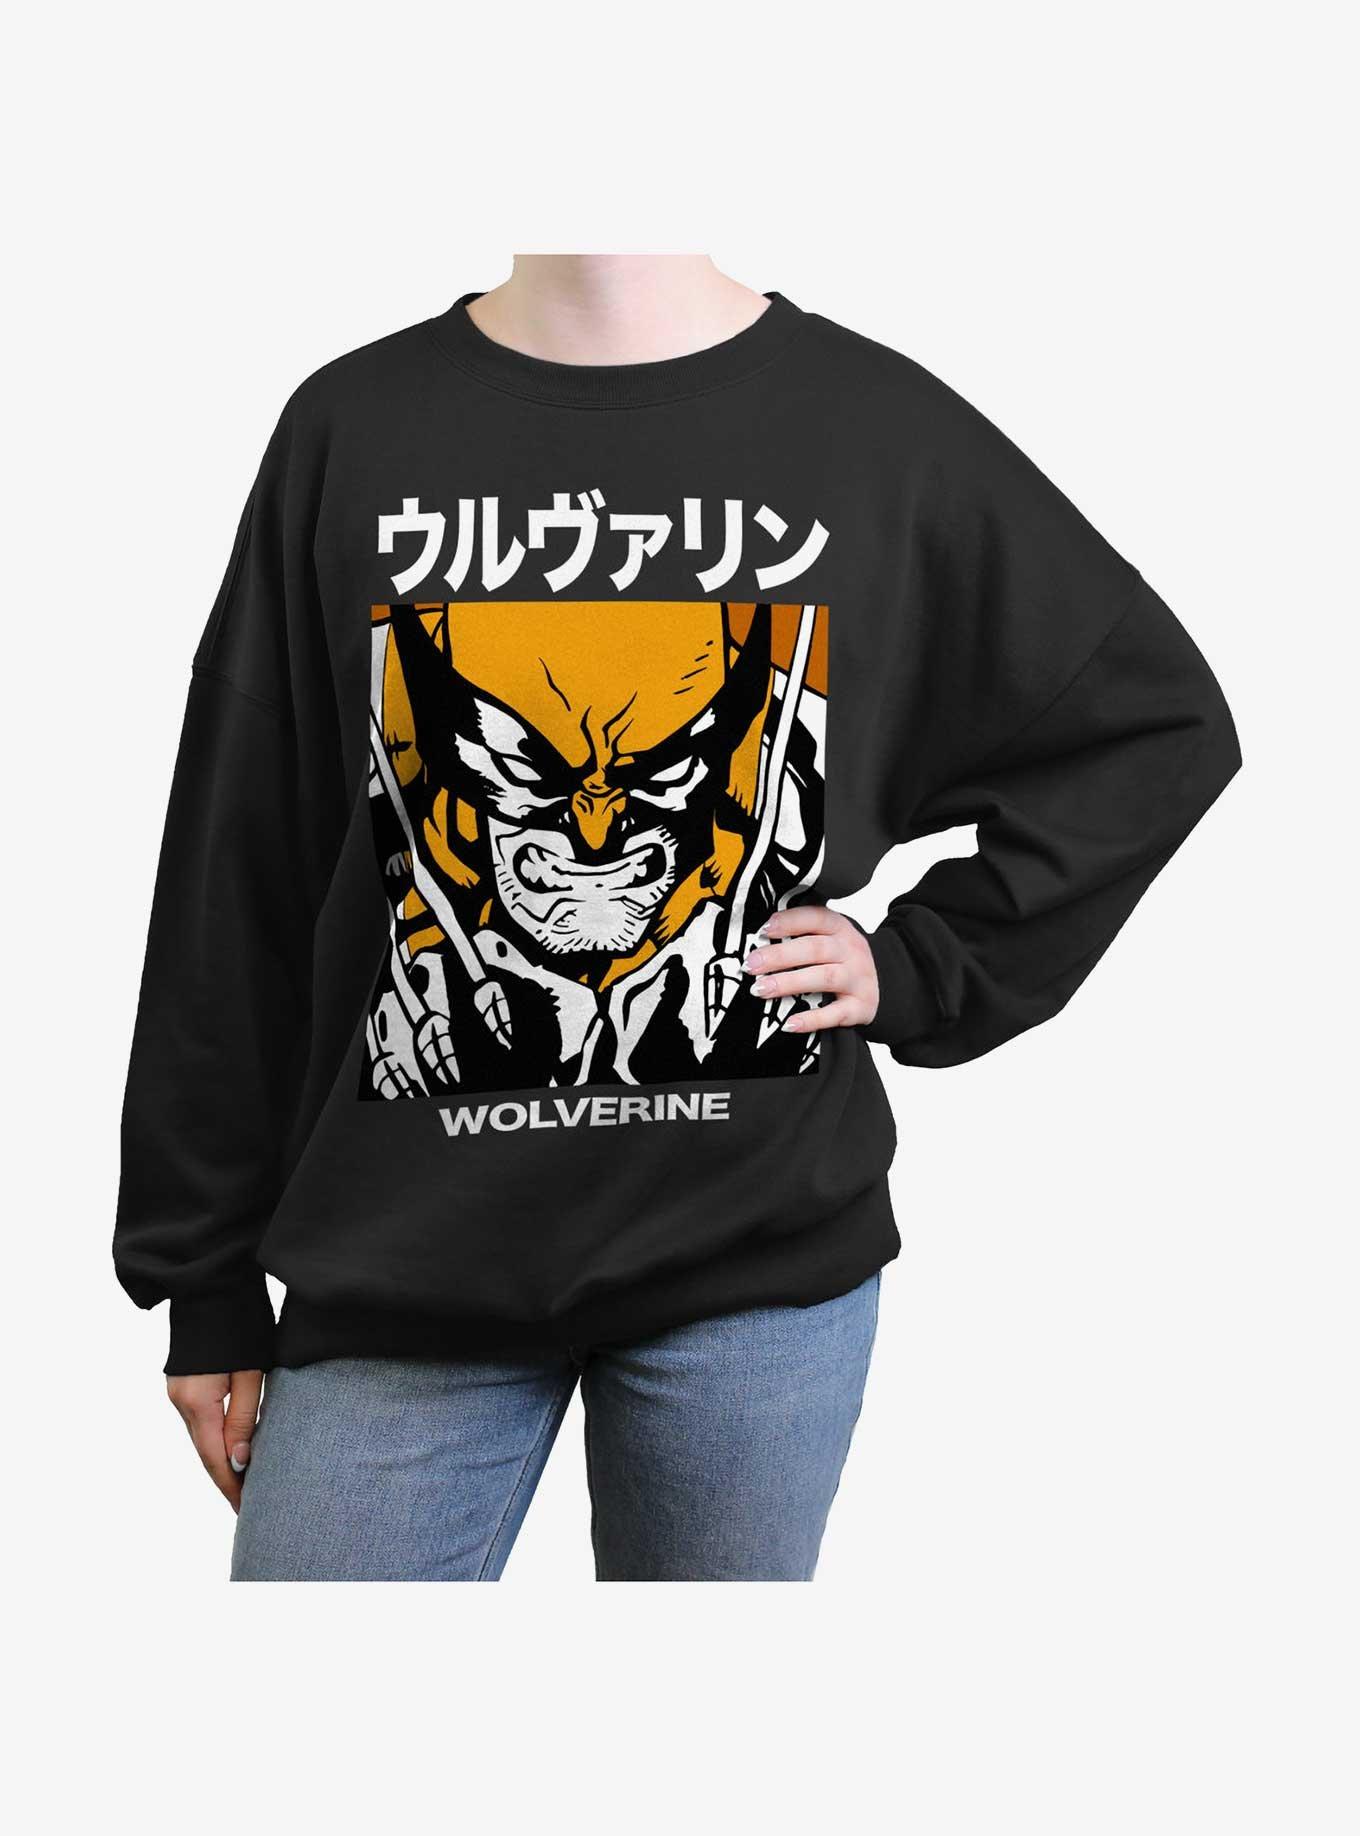 Wolverine Kanji Rage Girls Oversized Sweatshirt, BLACK, hi-res